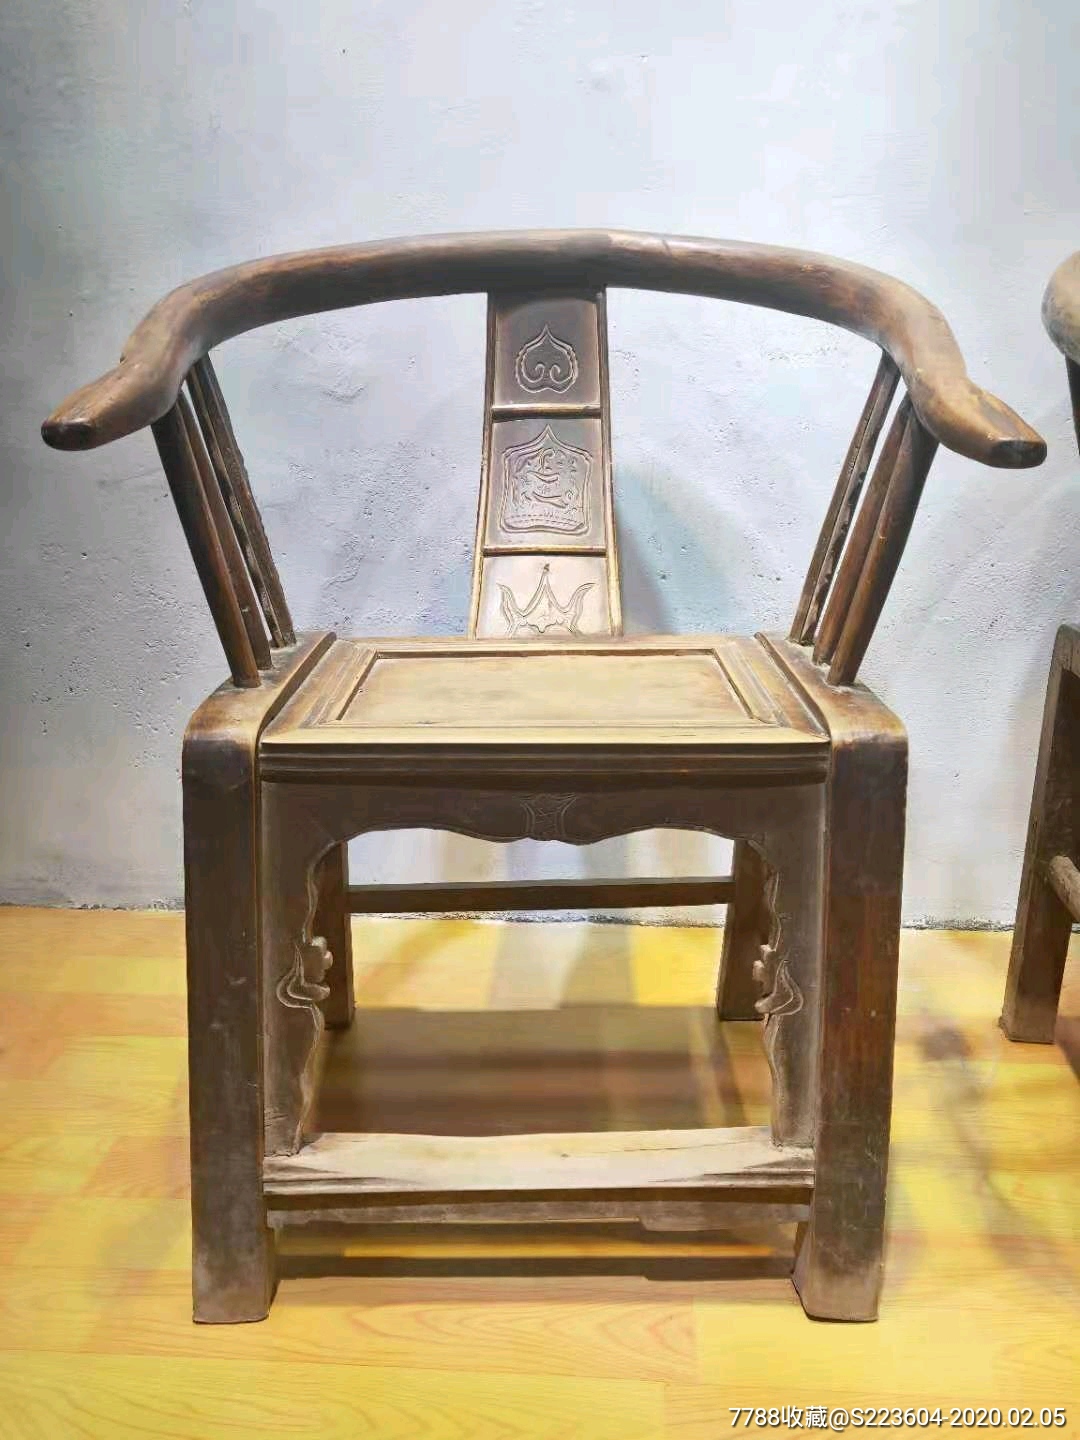 晚清民国时期精品老圈椅,保存完整,全品无松动,雕刻漂亮,坐用舒服大气